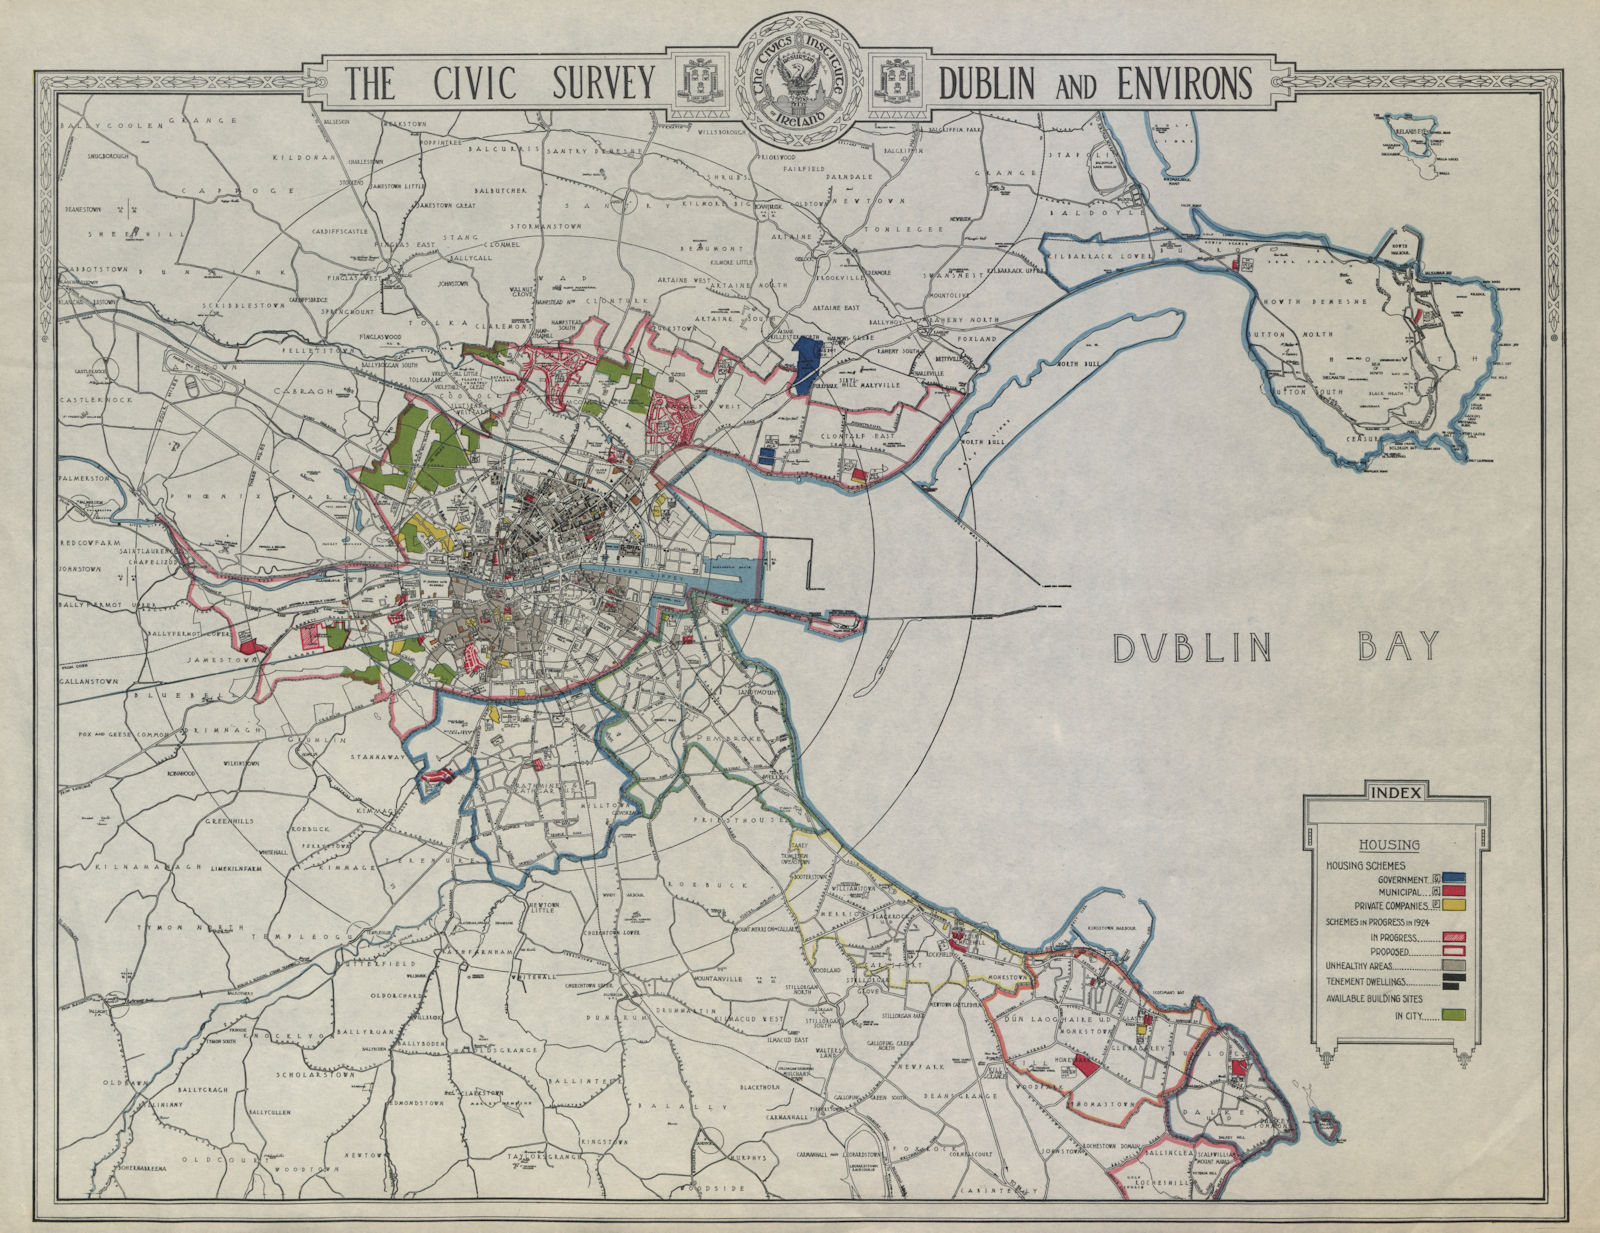 DUBLIN CIVIC SURVEY - Housing schemes tenements unhealthy areas sites 1925 map